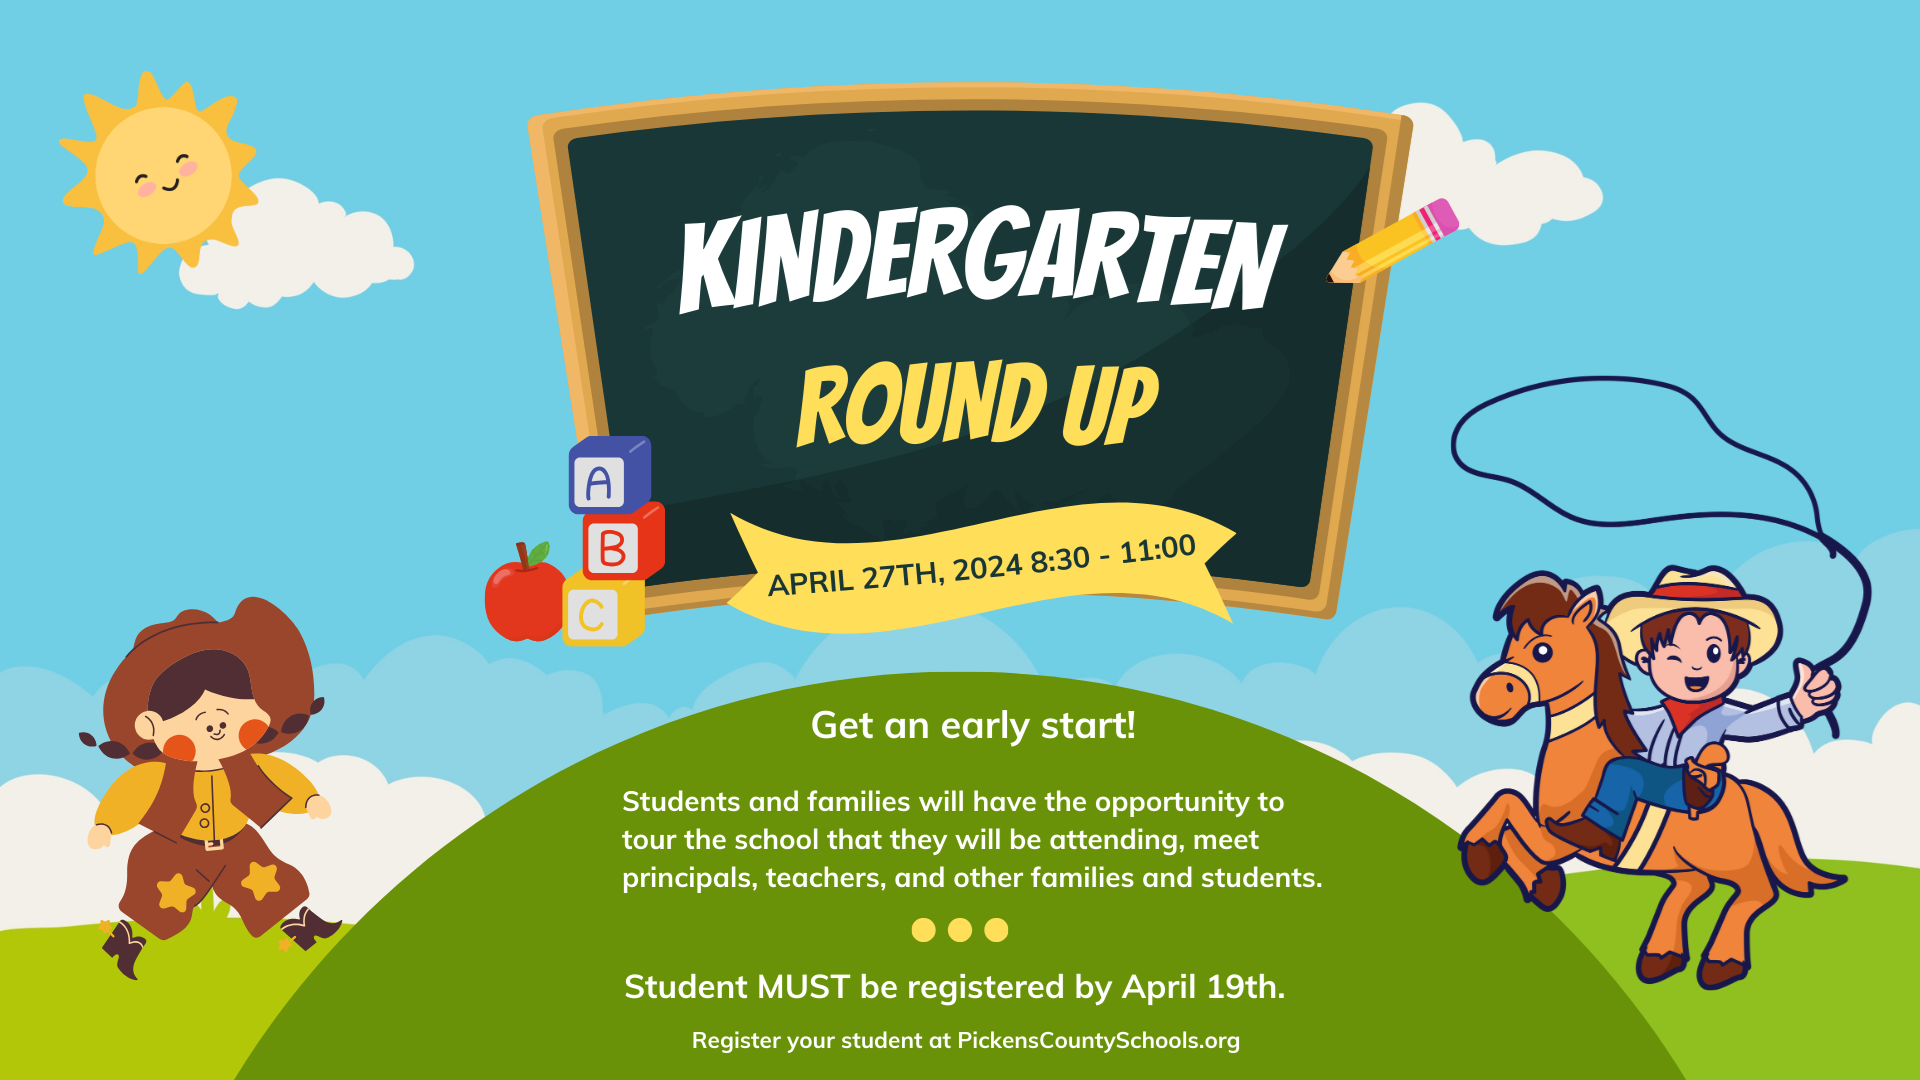 Kindergarten Round Up - April 27th